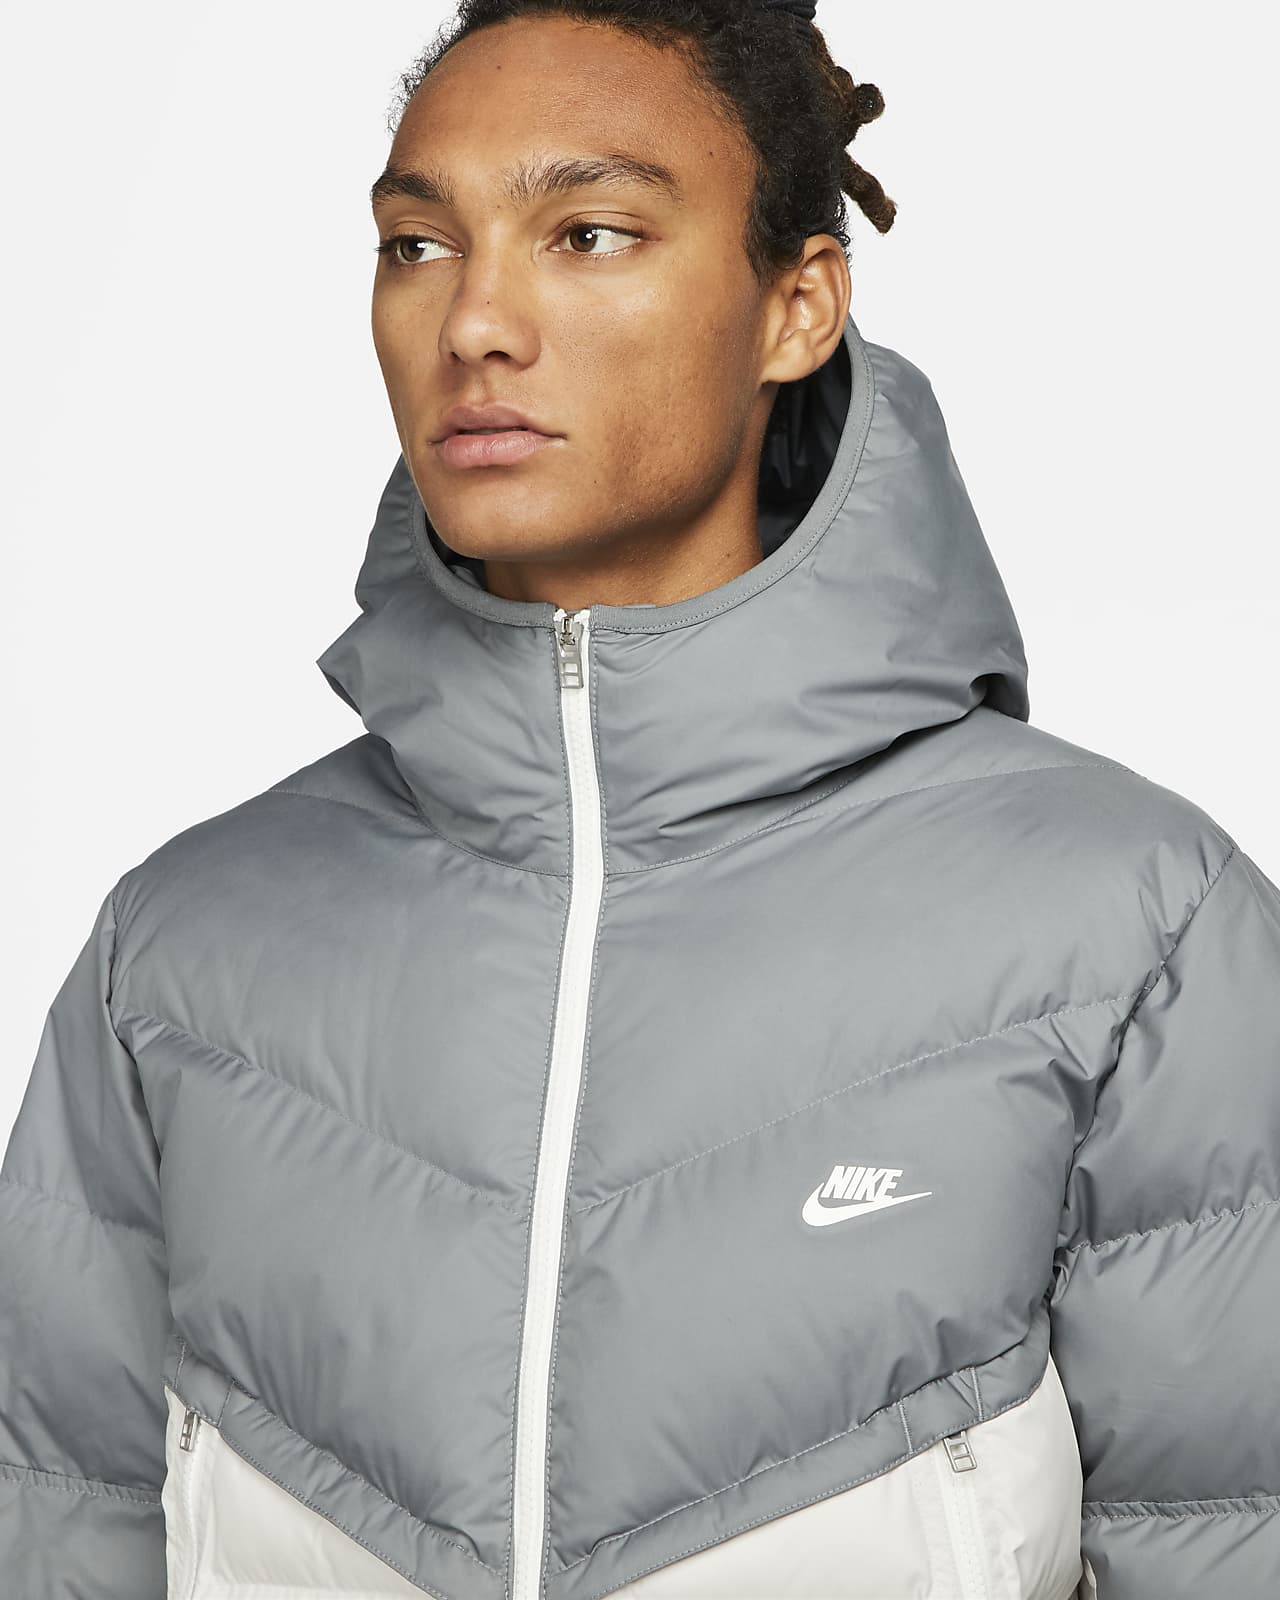 Nike Sportswear Storm-FIT City Series Men's Hooded Jacket.